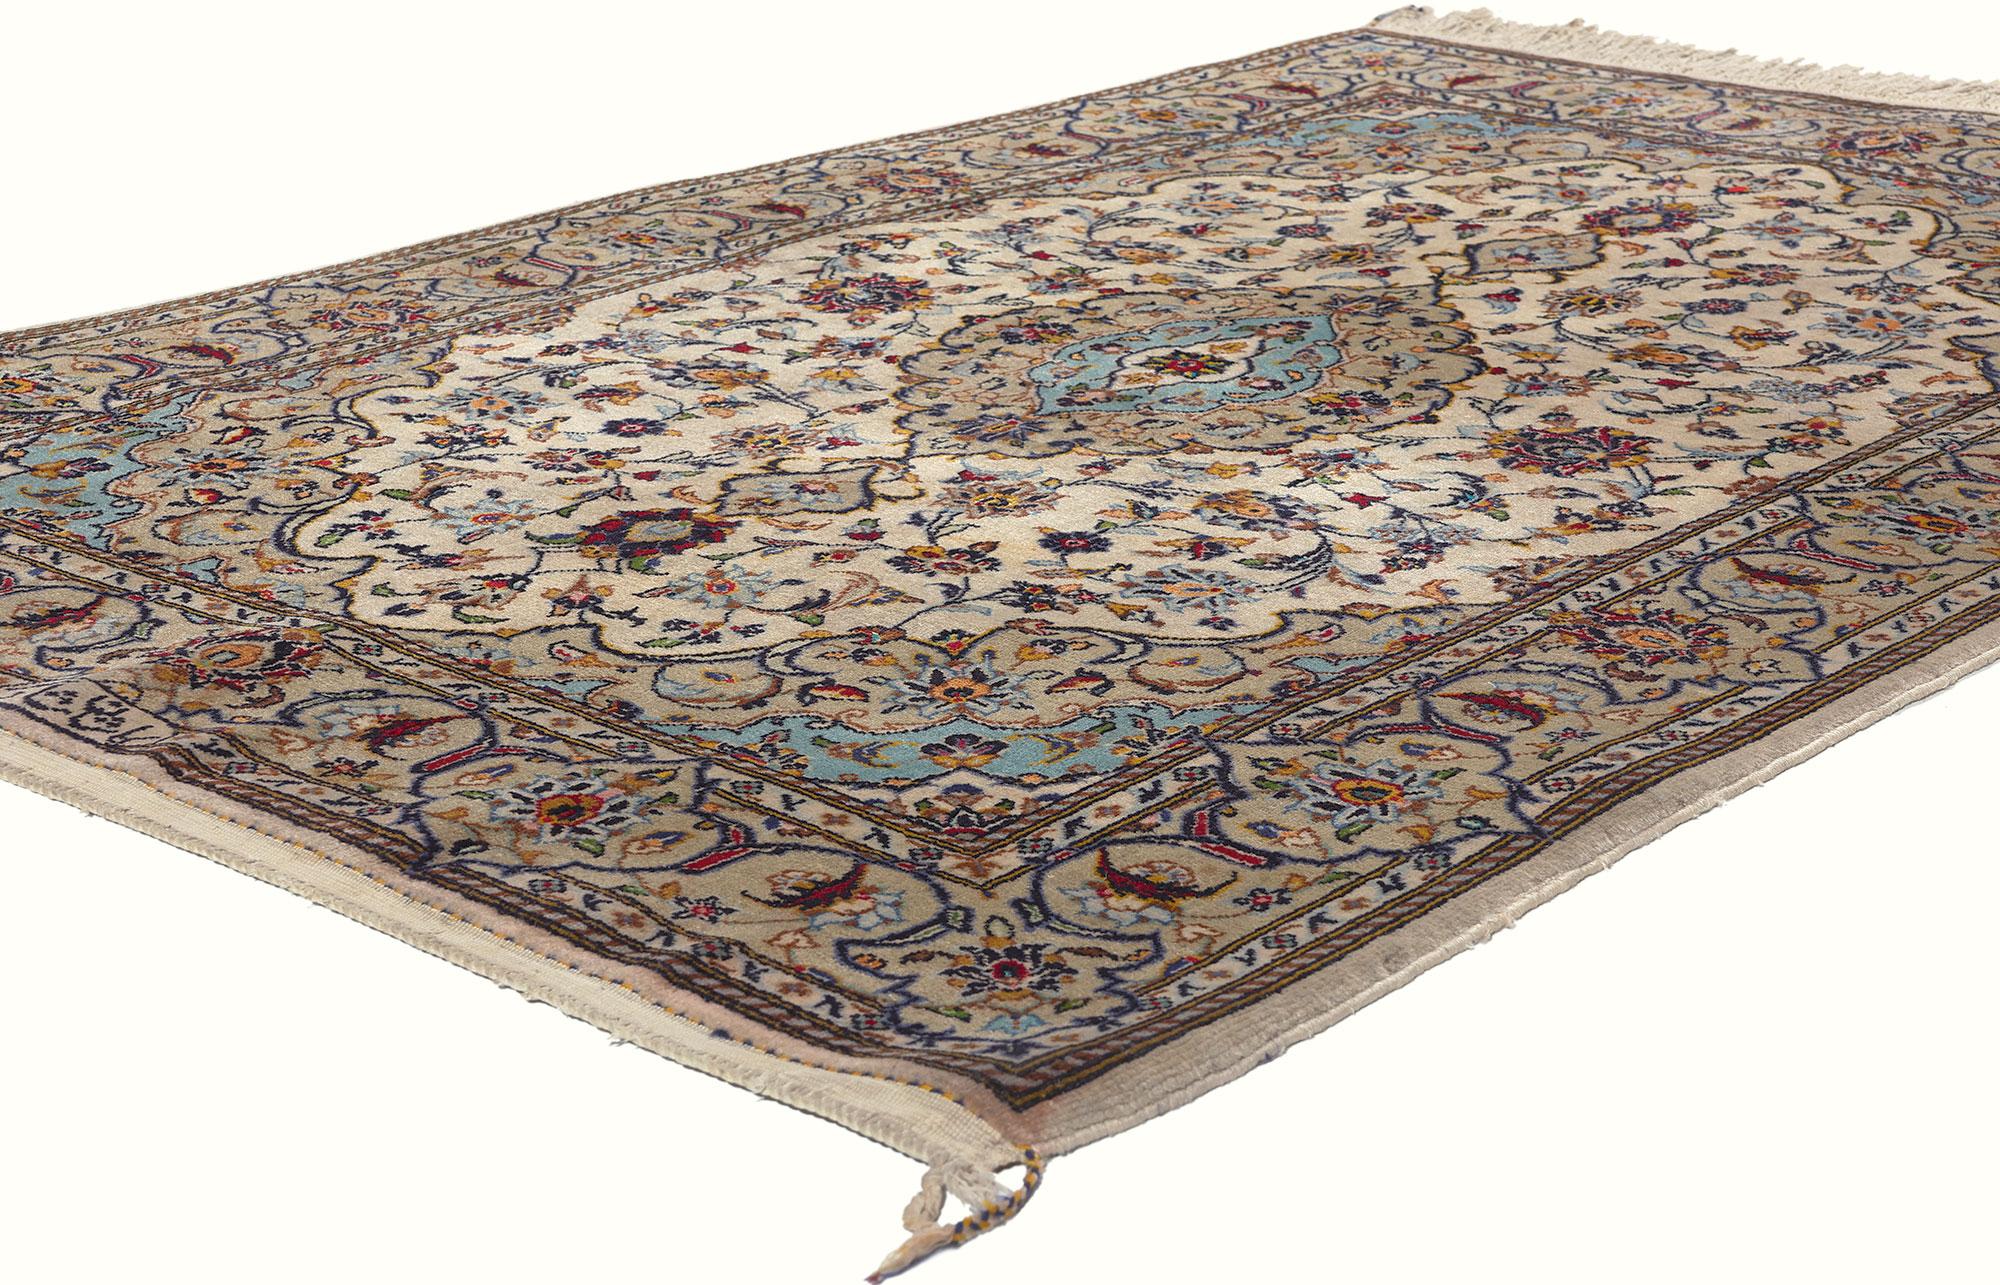 78701 Vintage Persisch Shadsar Kashan Teppich, 03'11 x 05'09. Die aus der iranischen Region Kashan stammenden persischen Shadsar-Kashan-Teppiche sind der Inbegriff sorgfältiger handgeknüpfter Handwerkskunst und bekannt für ihre filigranen Designs